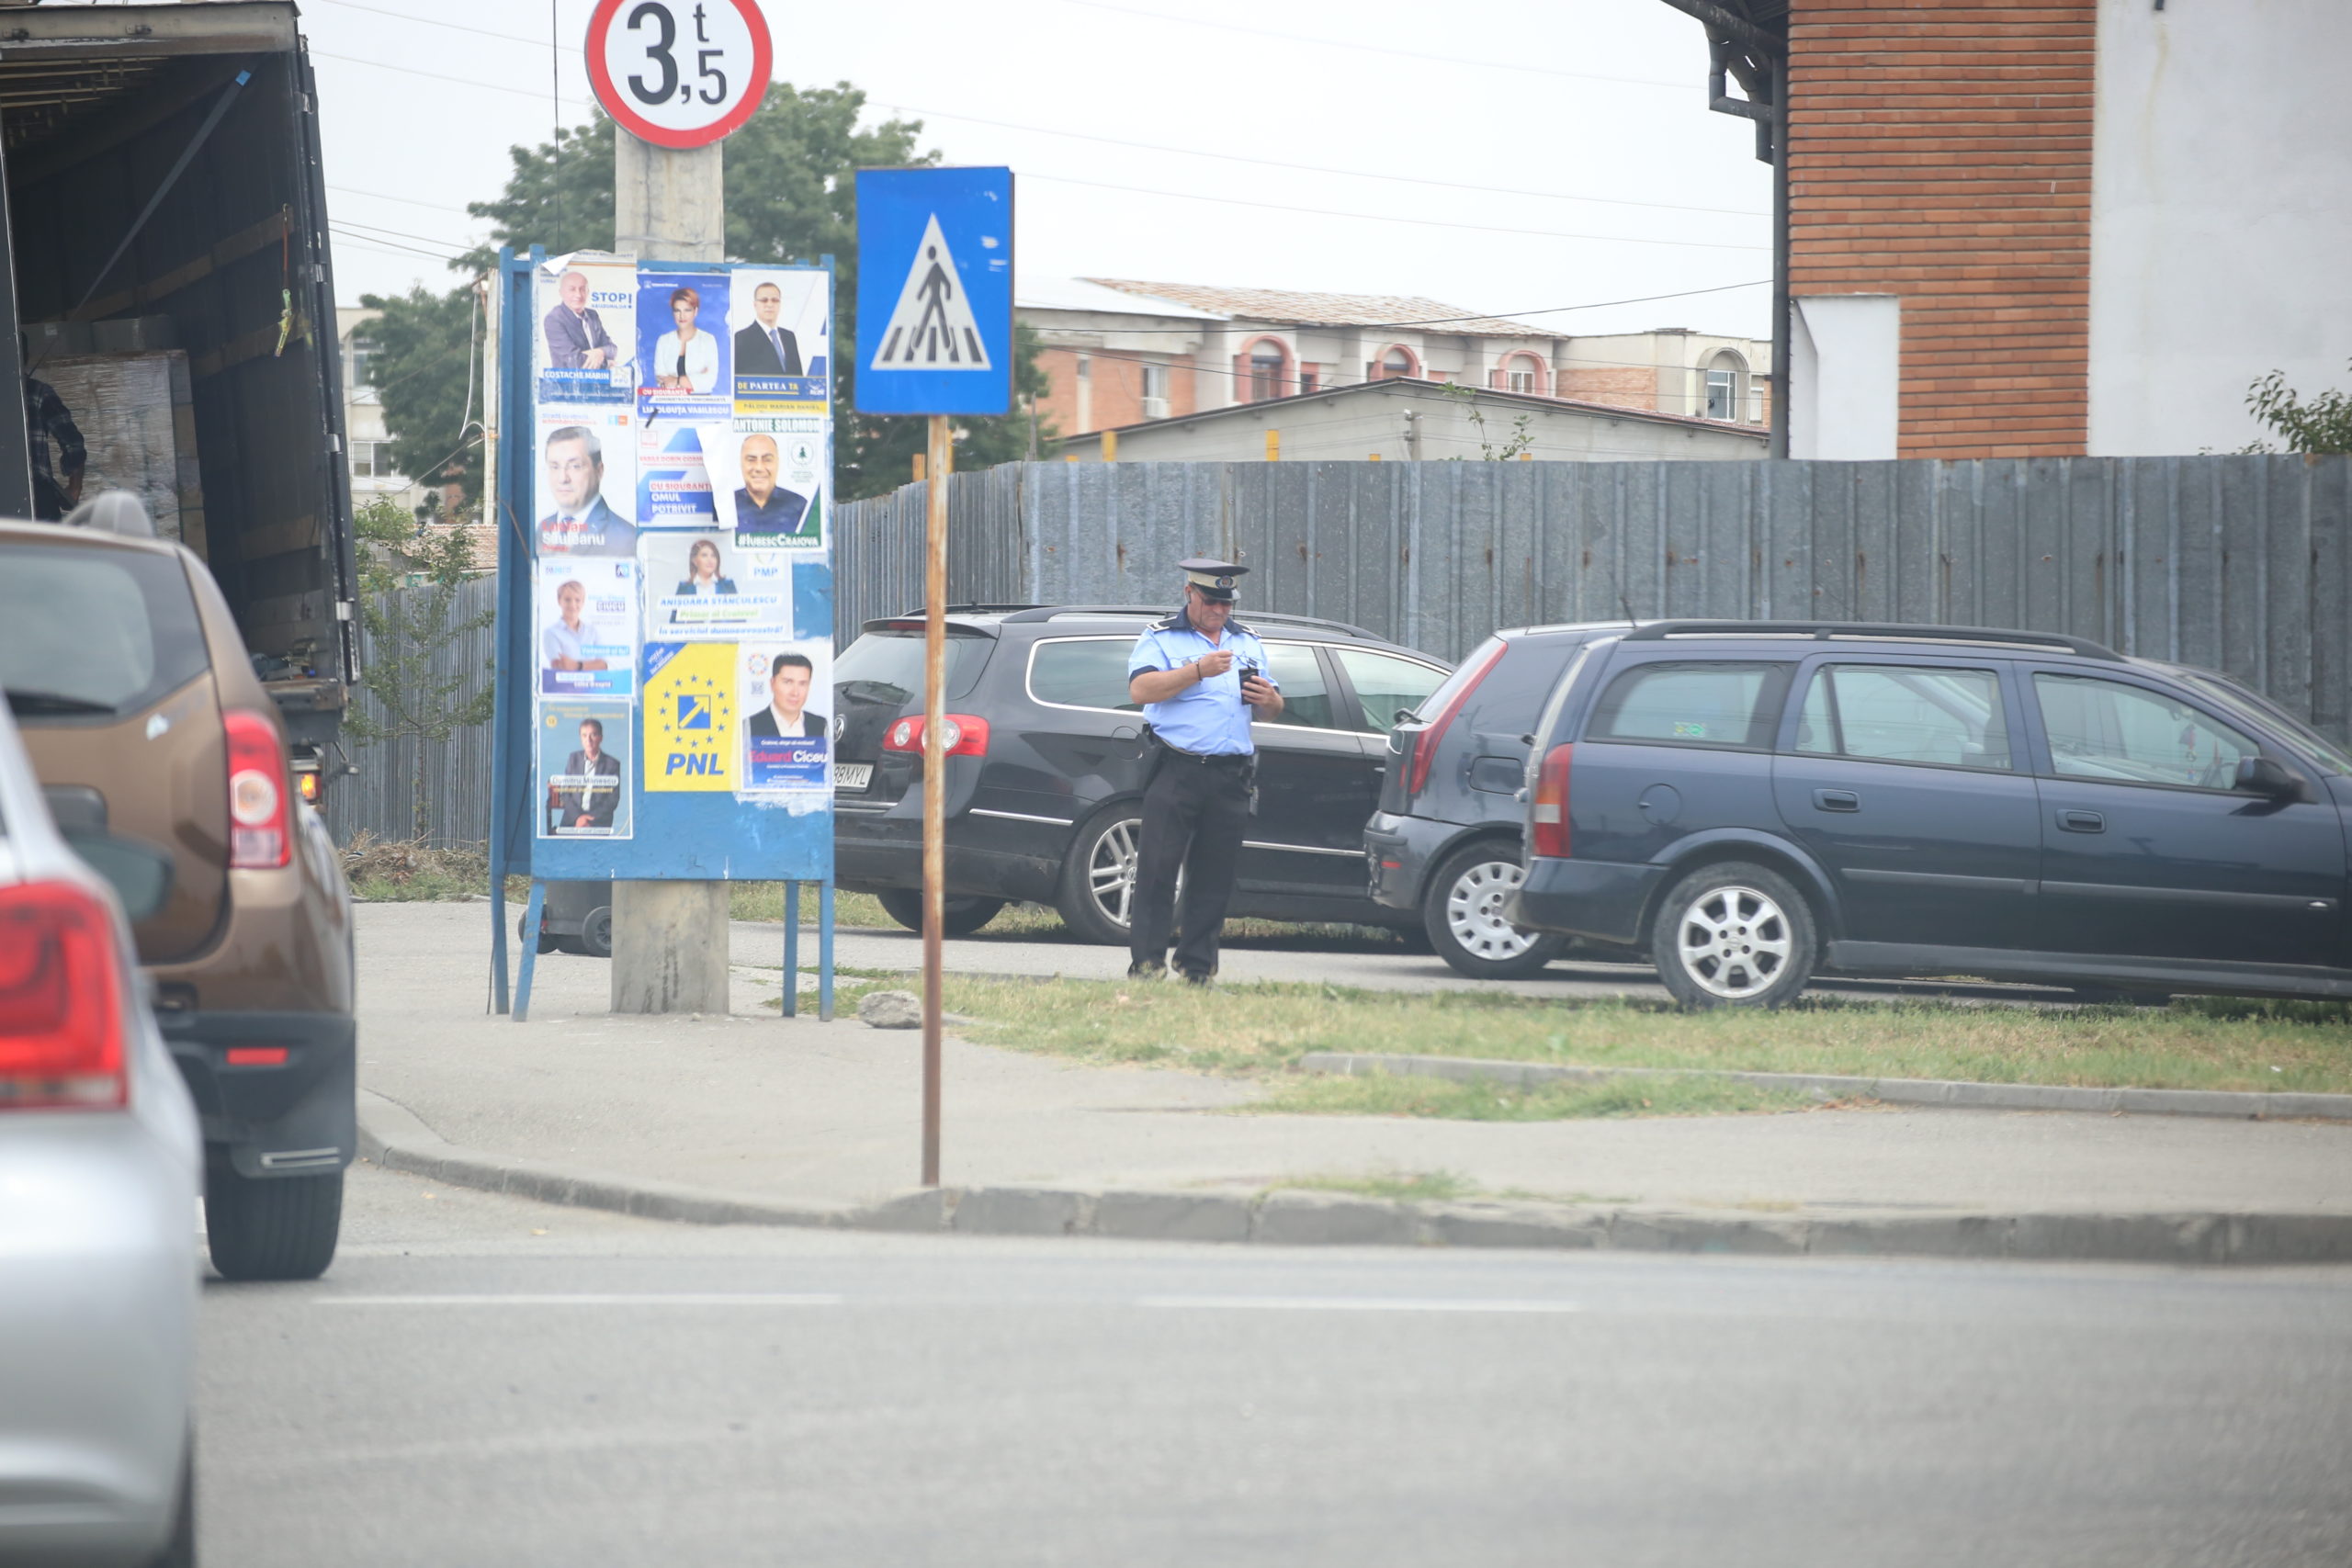 30,7 milioane de lei – costurile de funcționare a Poliției Locale Craiova